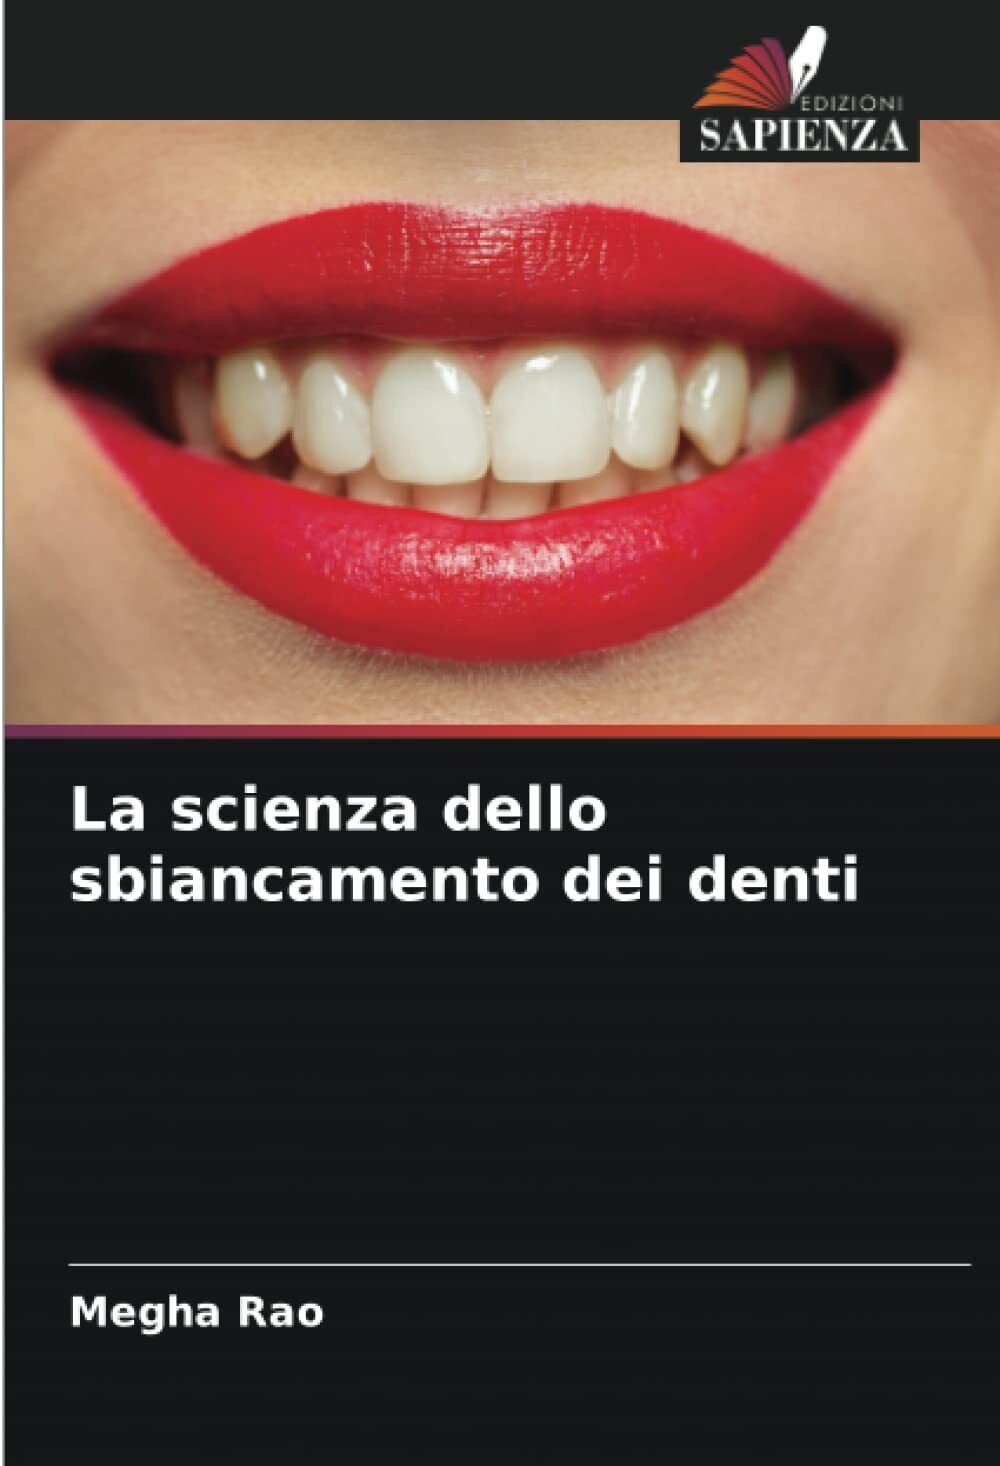 La scienza dello sbiancamento dei denti - Megha Rao - Sapienza, 2022